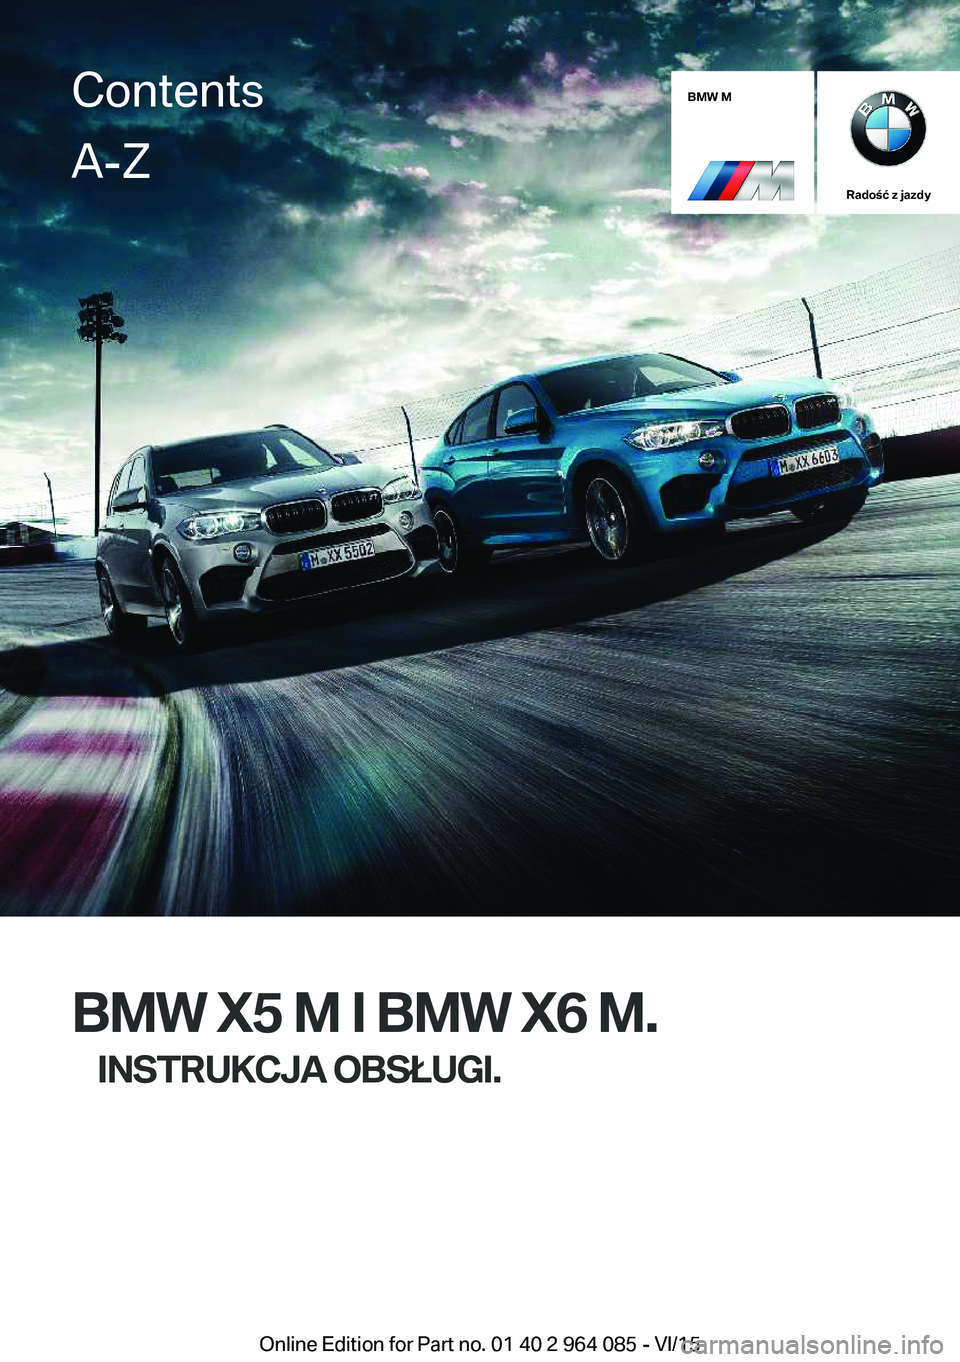 BMW X5 M 2016  Instrukcja obsługi (in Polish) BMW M
Radość z jazdy
BMW X5 M I BMW X6 M.INSTRUKCJA OBSŁUGI.
ContentsA-Z
Online Edition for Part no. 01 40 2 964 085 - VI/15   